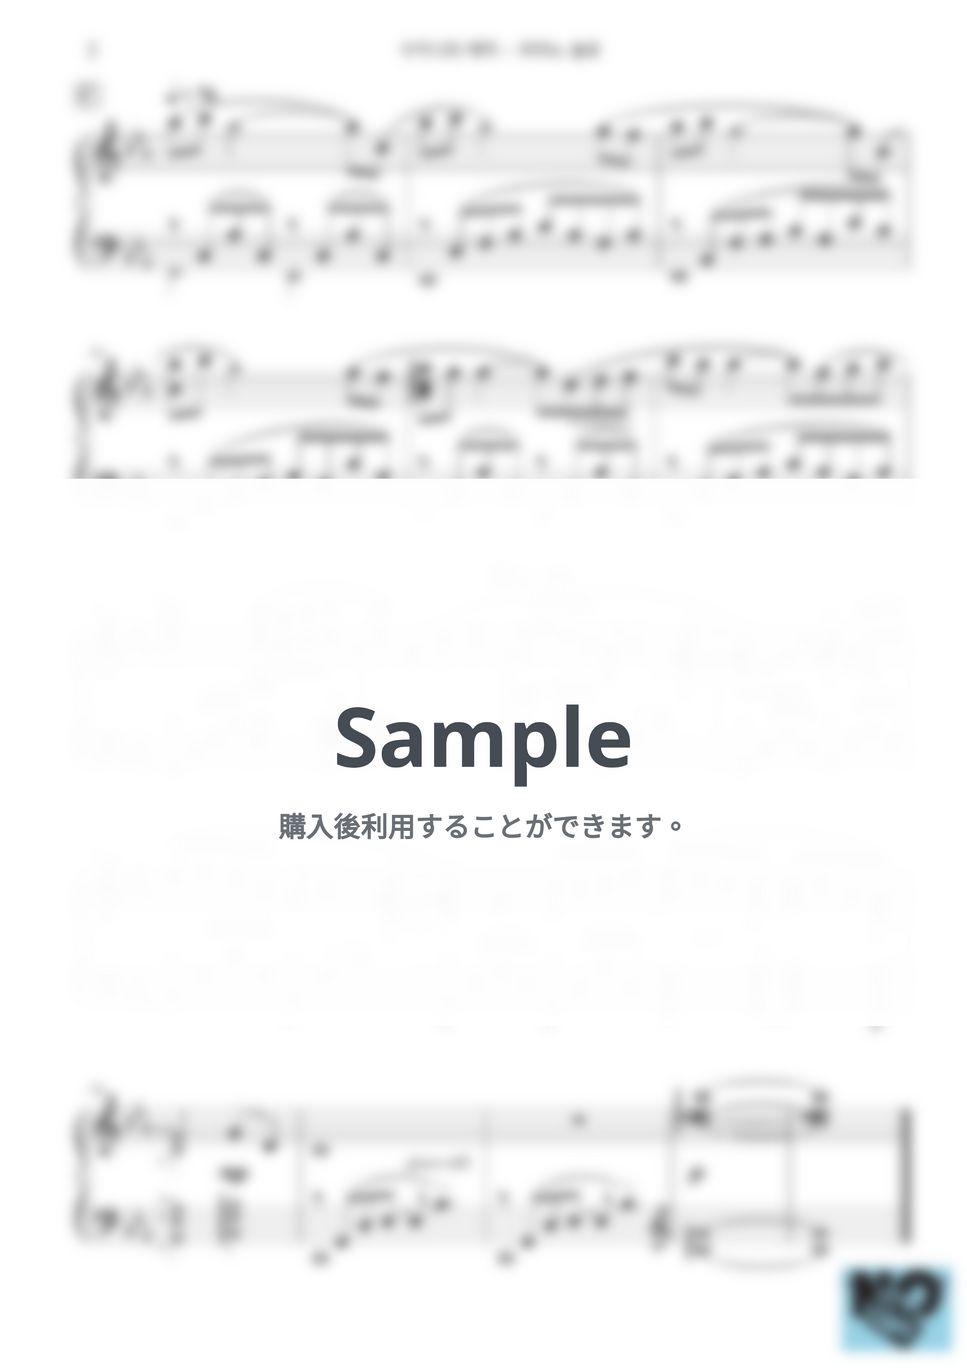 久石譲 - スジニのテーマ -ピアノソロバージョン- (原典版) by 楊思緯